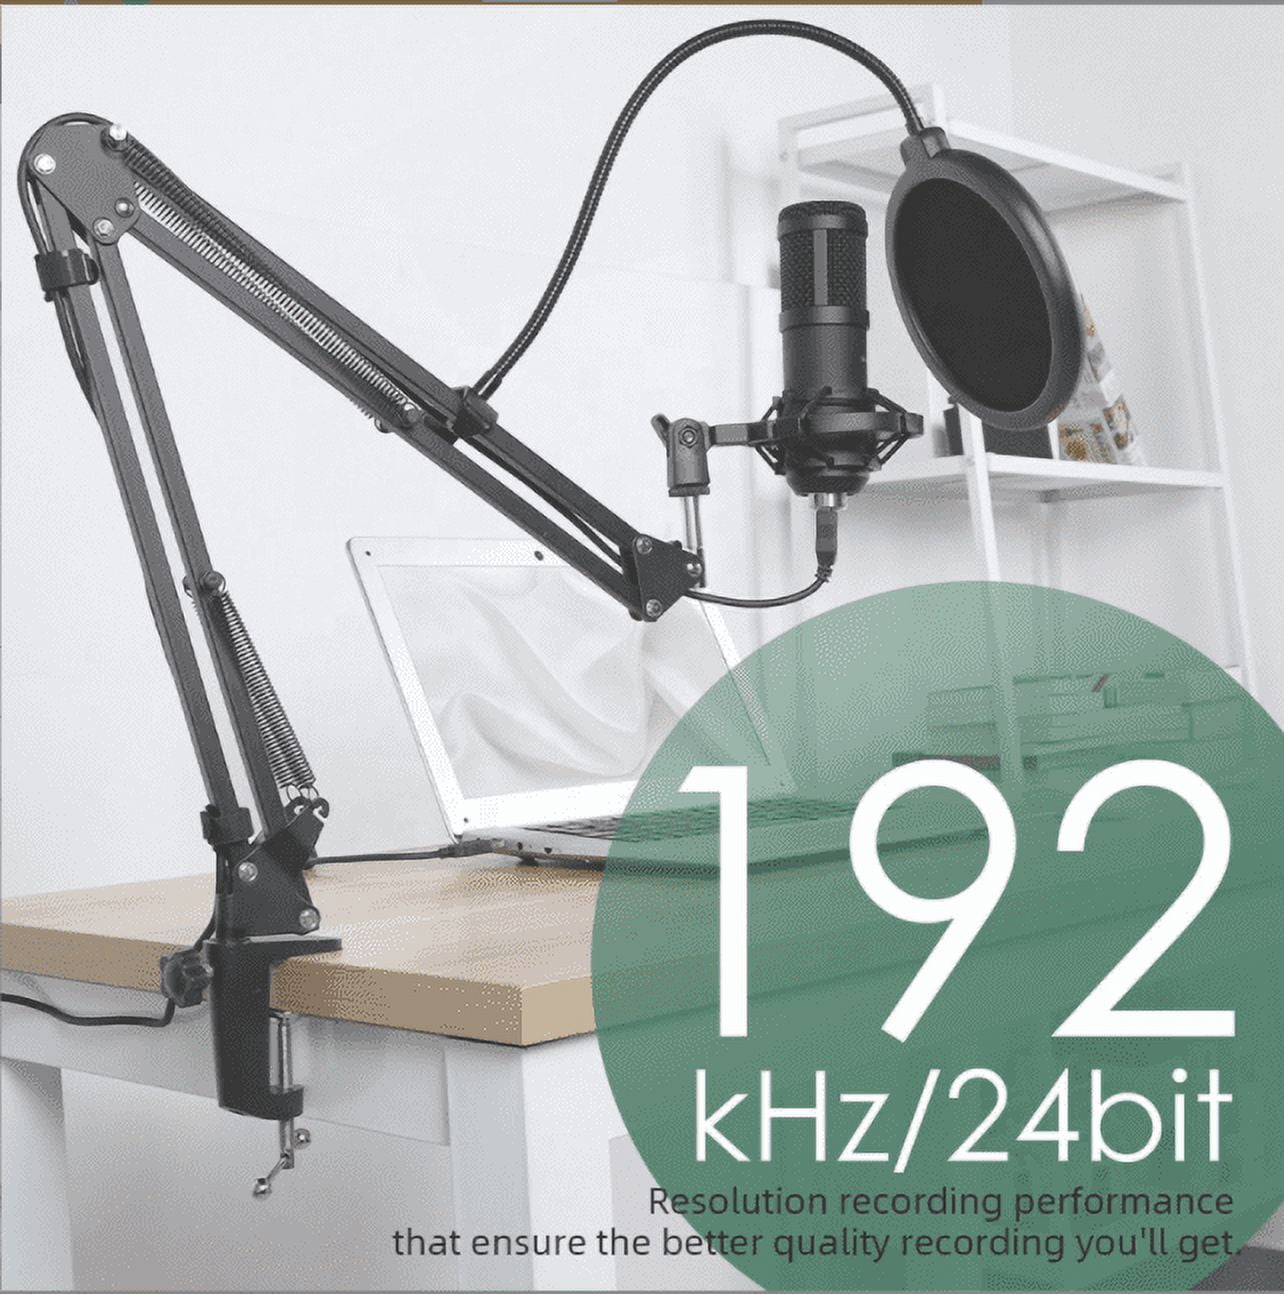 Usb Streaming Podcast Pc Microphone, Professionnel 192khz / 24bit Studio  Cardioïde Condensateur Mic Kit Avec Carte Son Boom Bras Shock Mount Pop  Filter, Pour